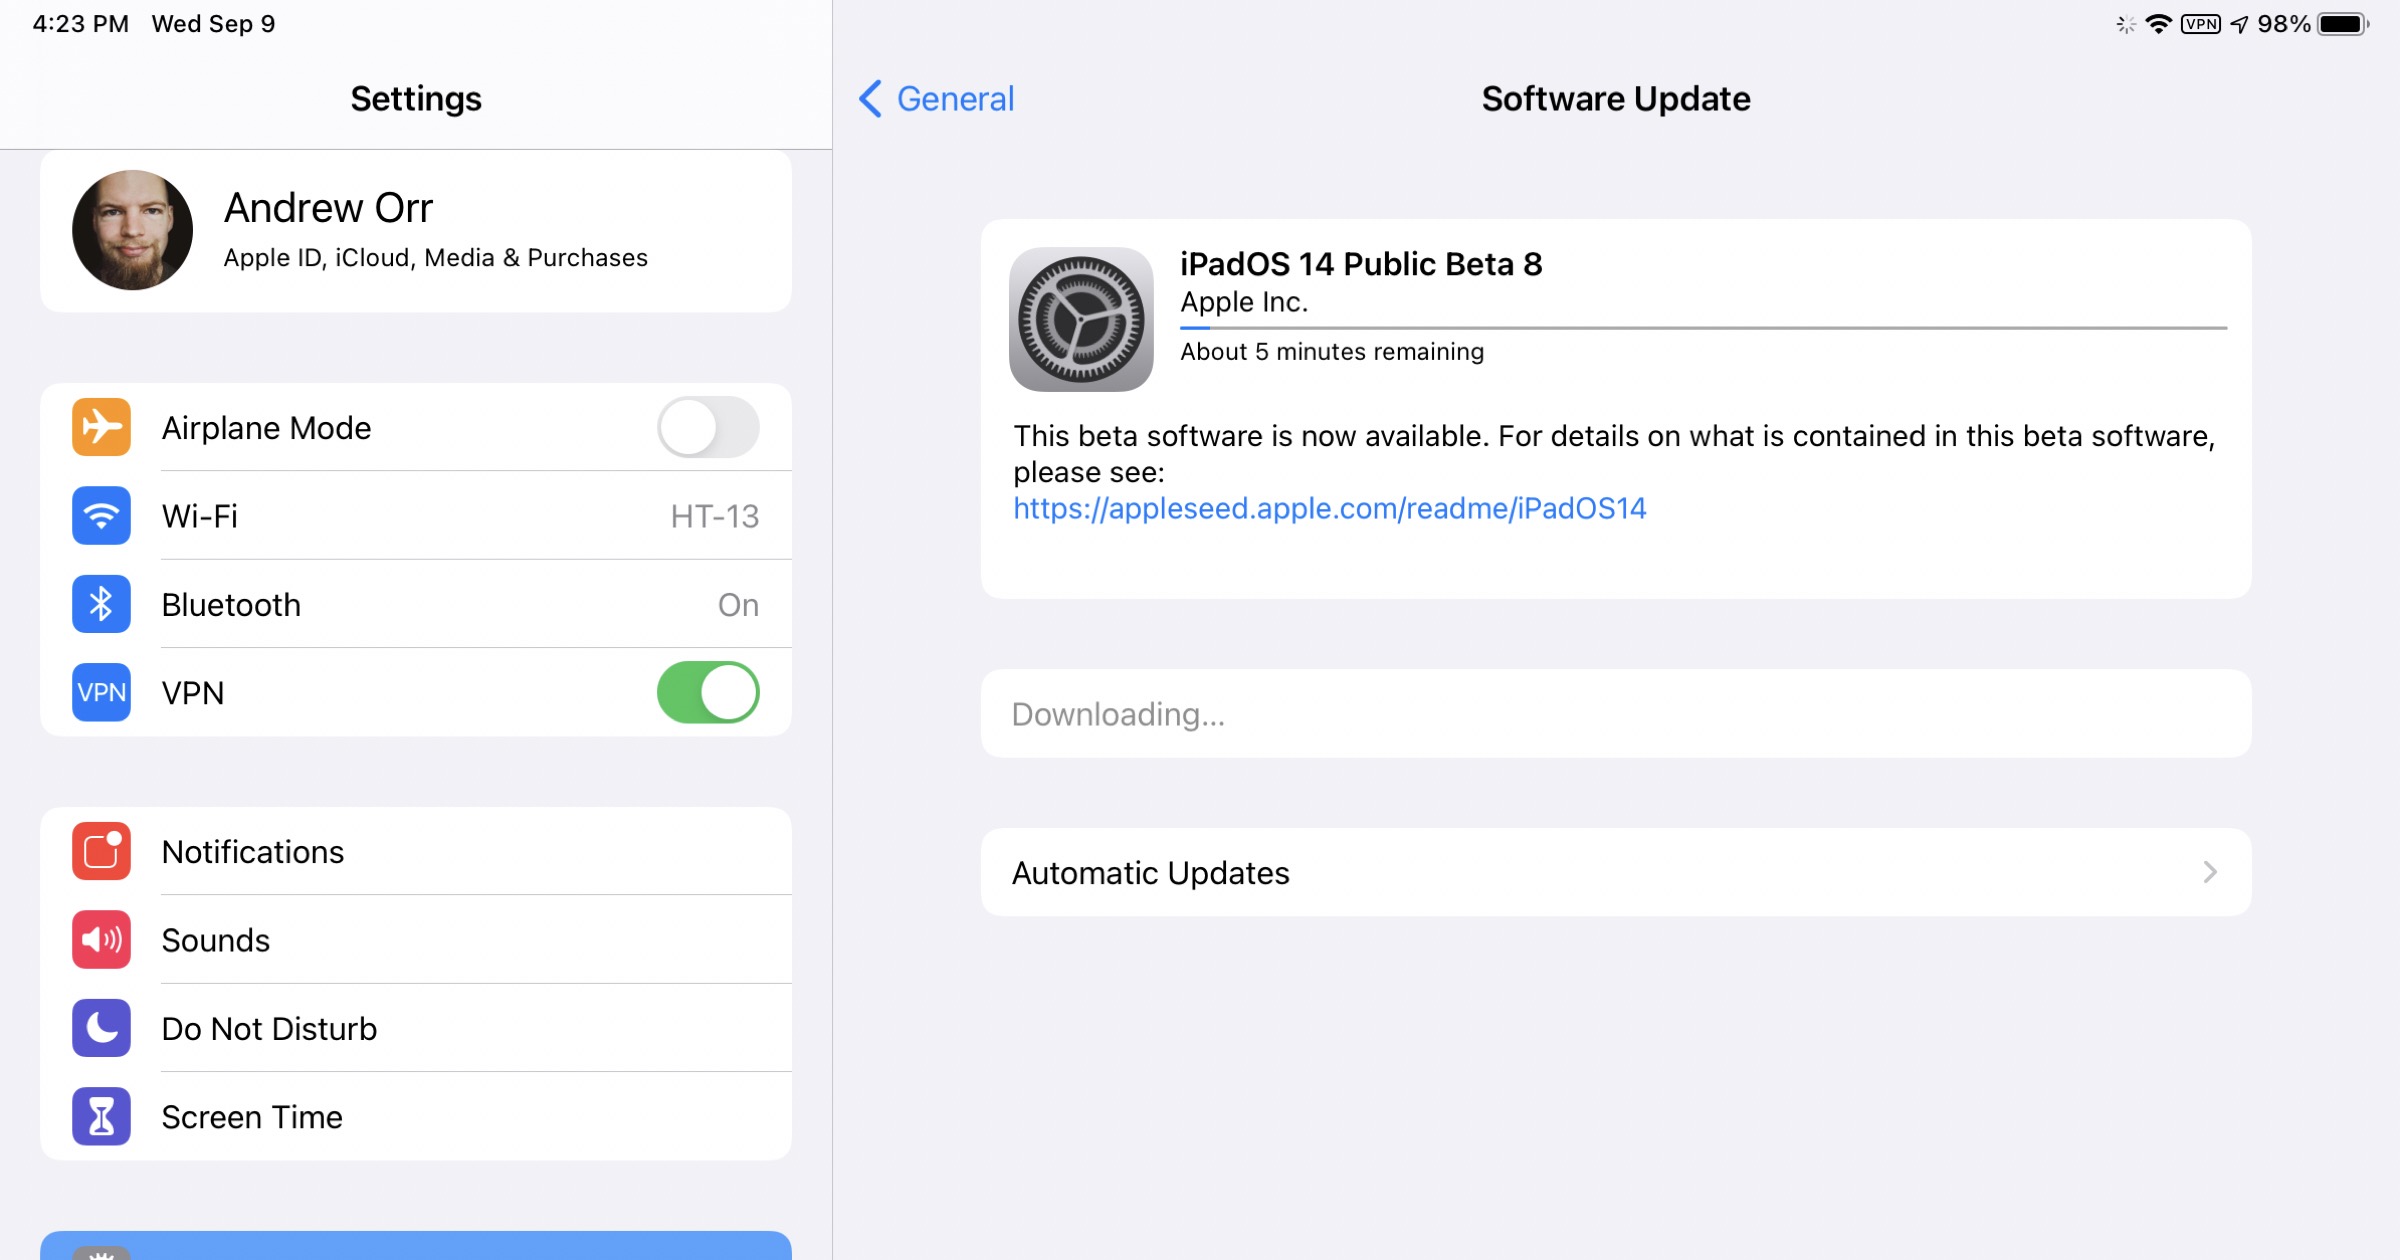 Semillas de iOS 14 Public Beta 8 para desarrolladores, probadores públicos